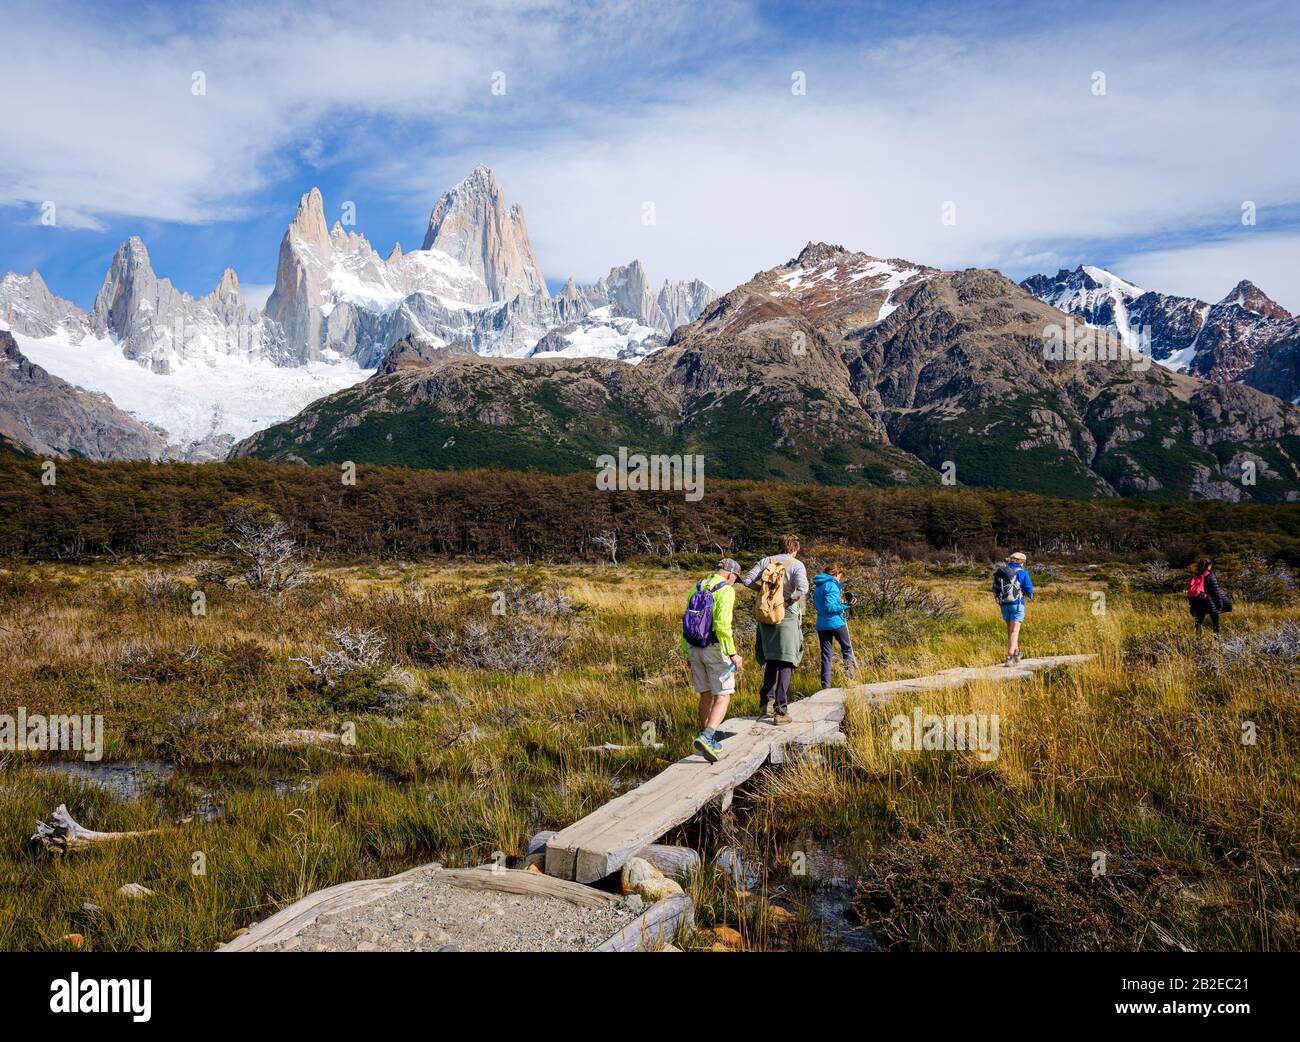 Nationalpark LOS GLACIARES, ARGENTINIEN - CIRCA FEBRUAR 2019: Backpackers Wandern im Nationalpark los Glaciares in Argentinien. Stockfoto